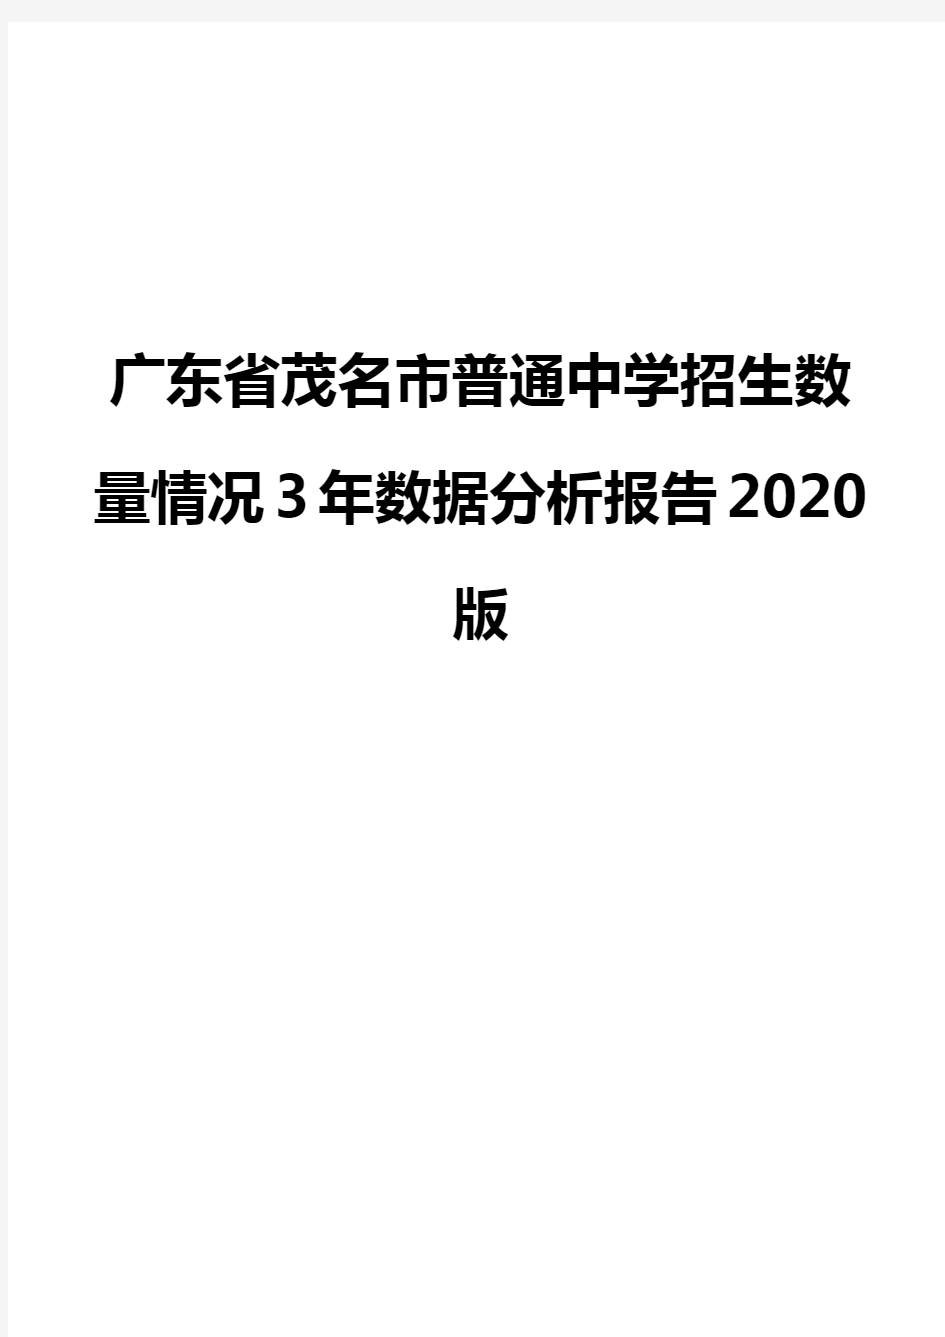 广东省茂名市普通中学招生数量情况3年数据分析报告2020版